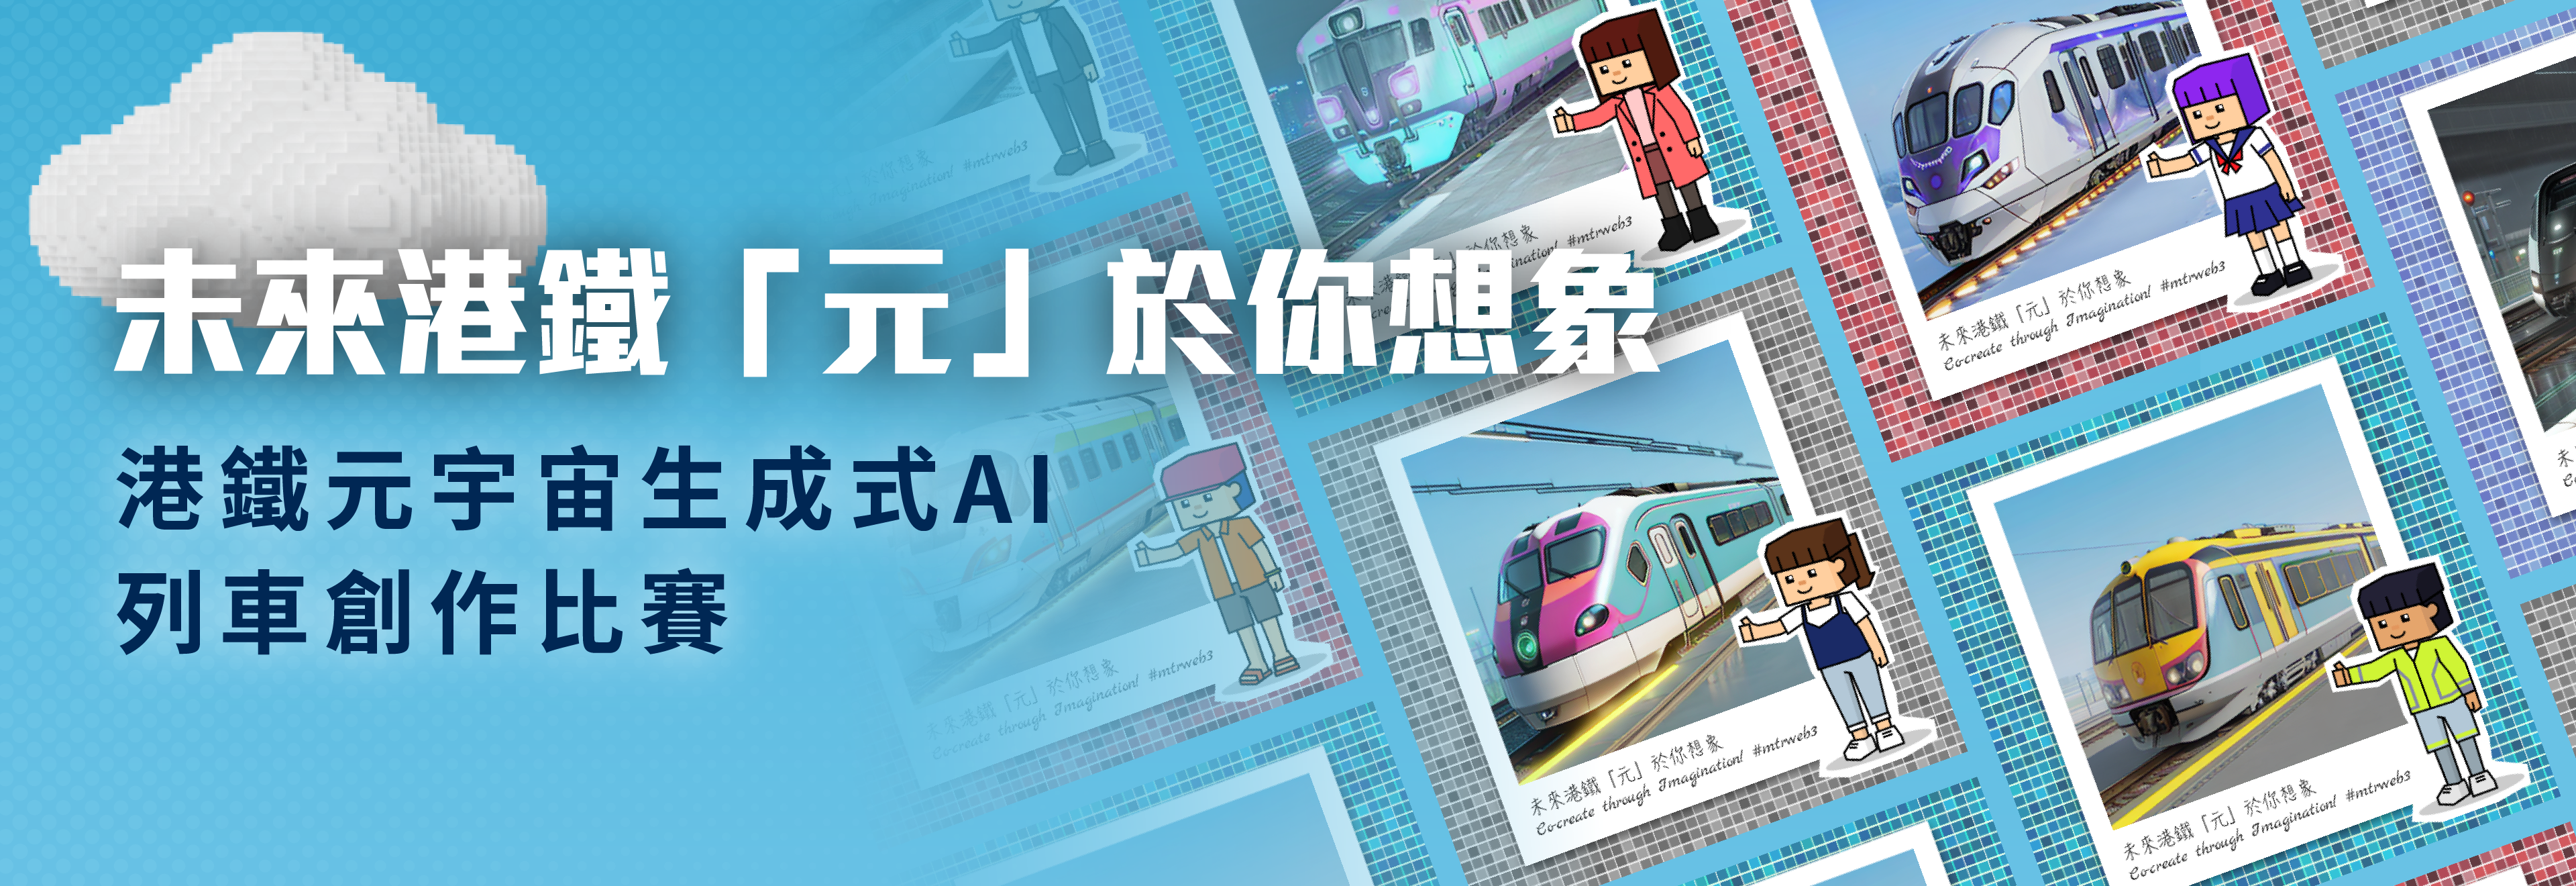 MTR AI avatar KV banner ZH v2a